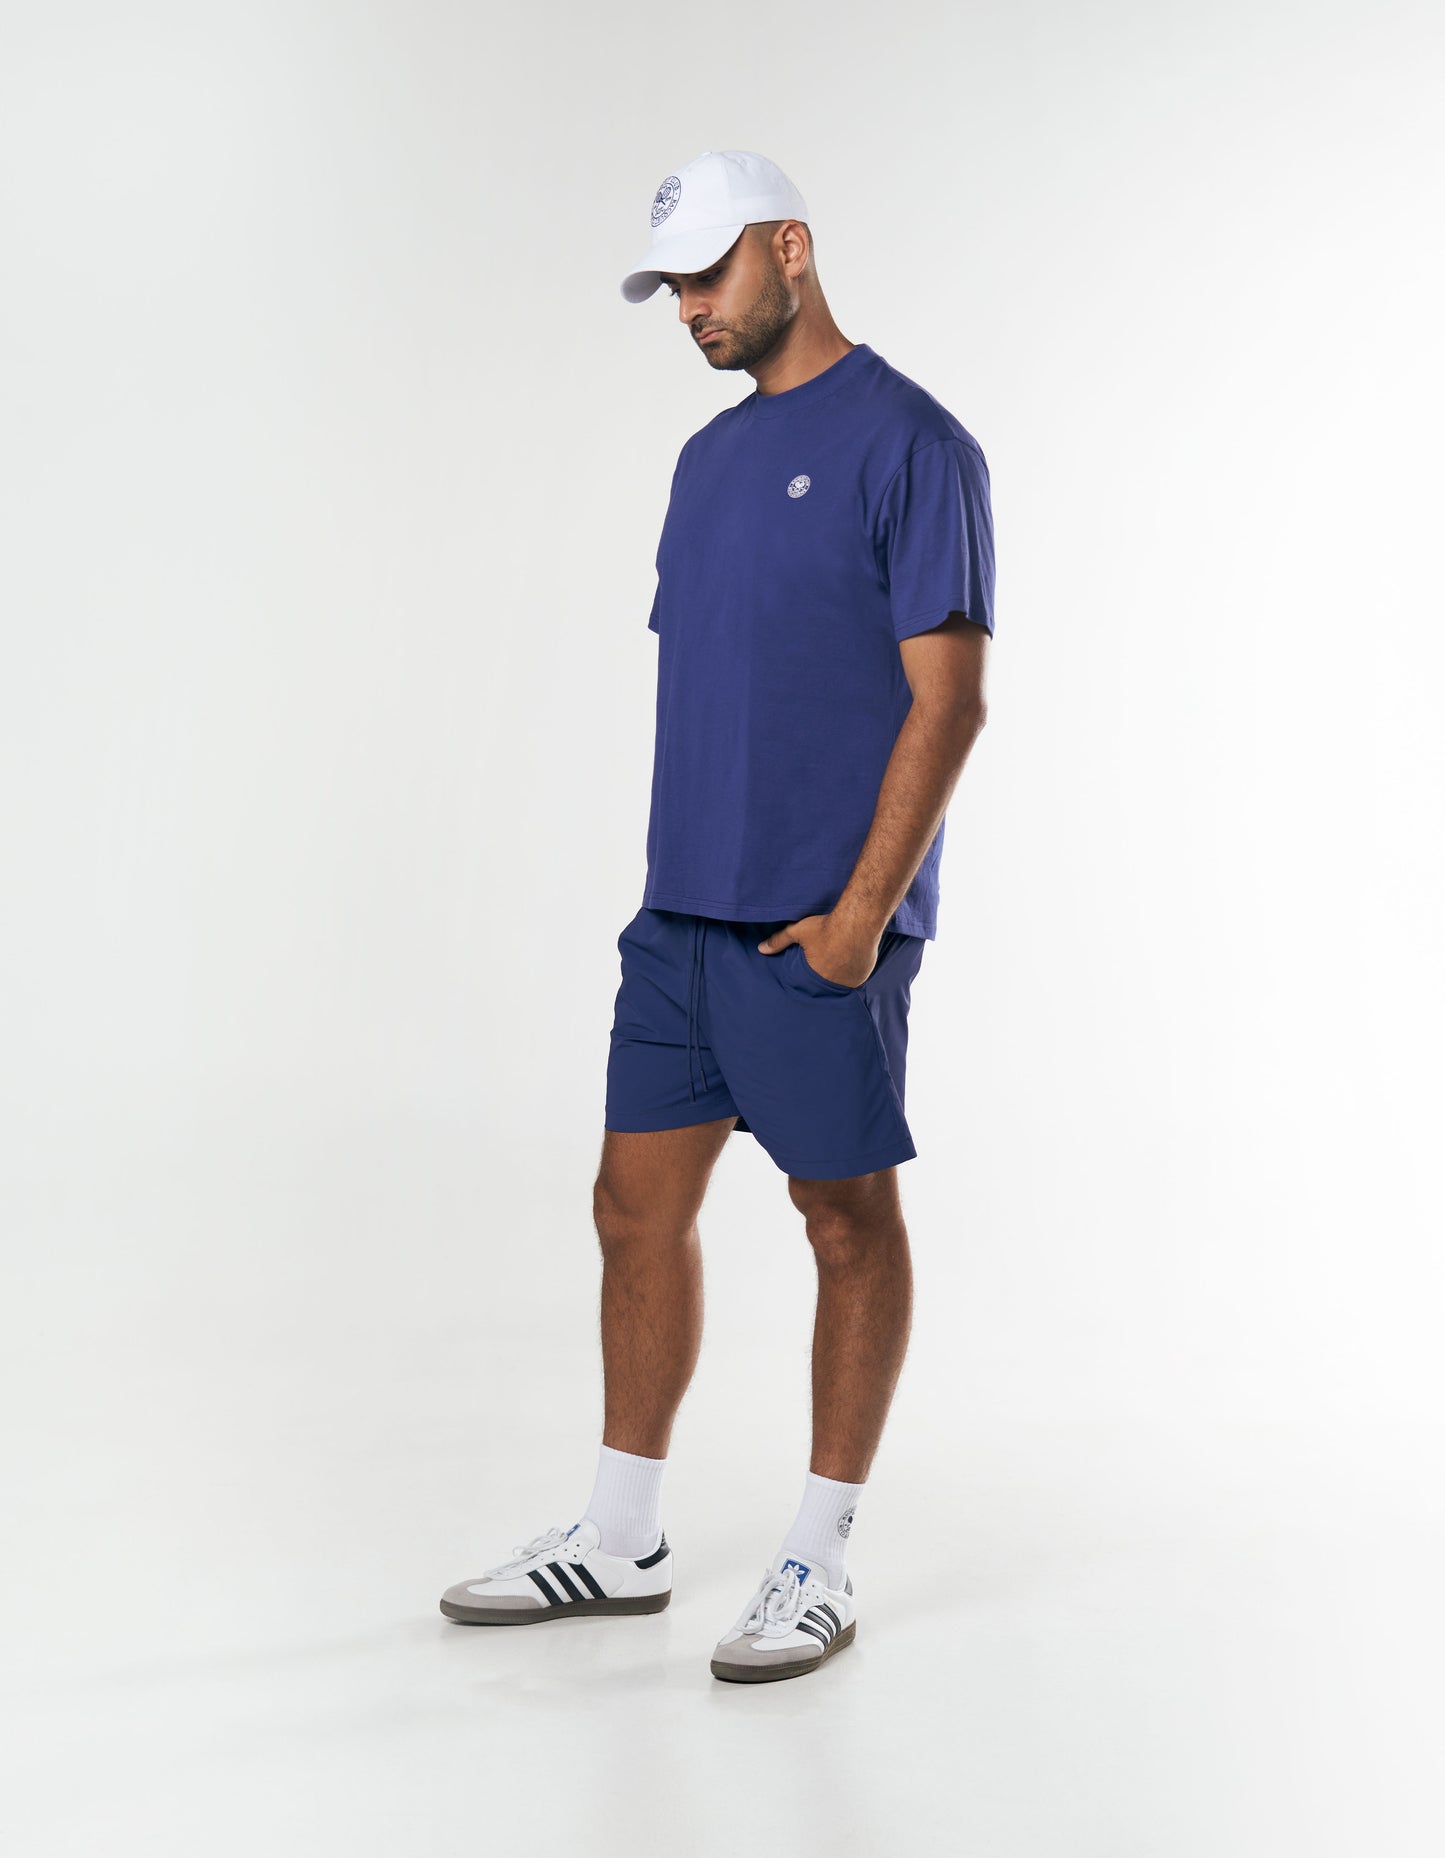 Racquet Club Shorts - Navy